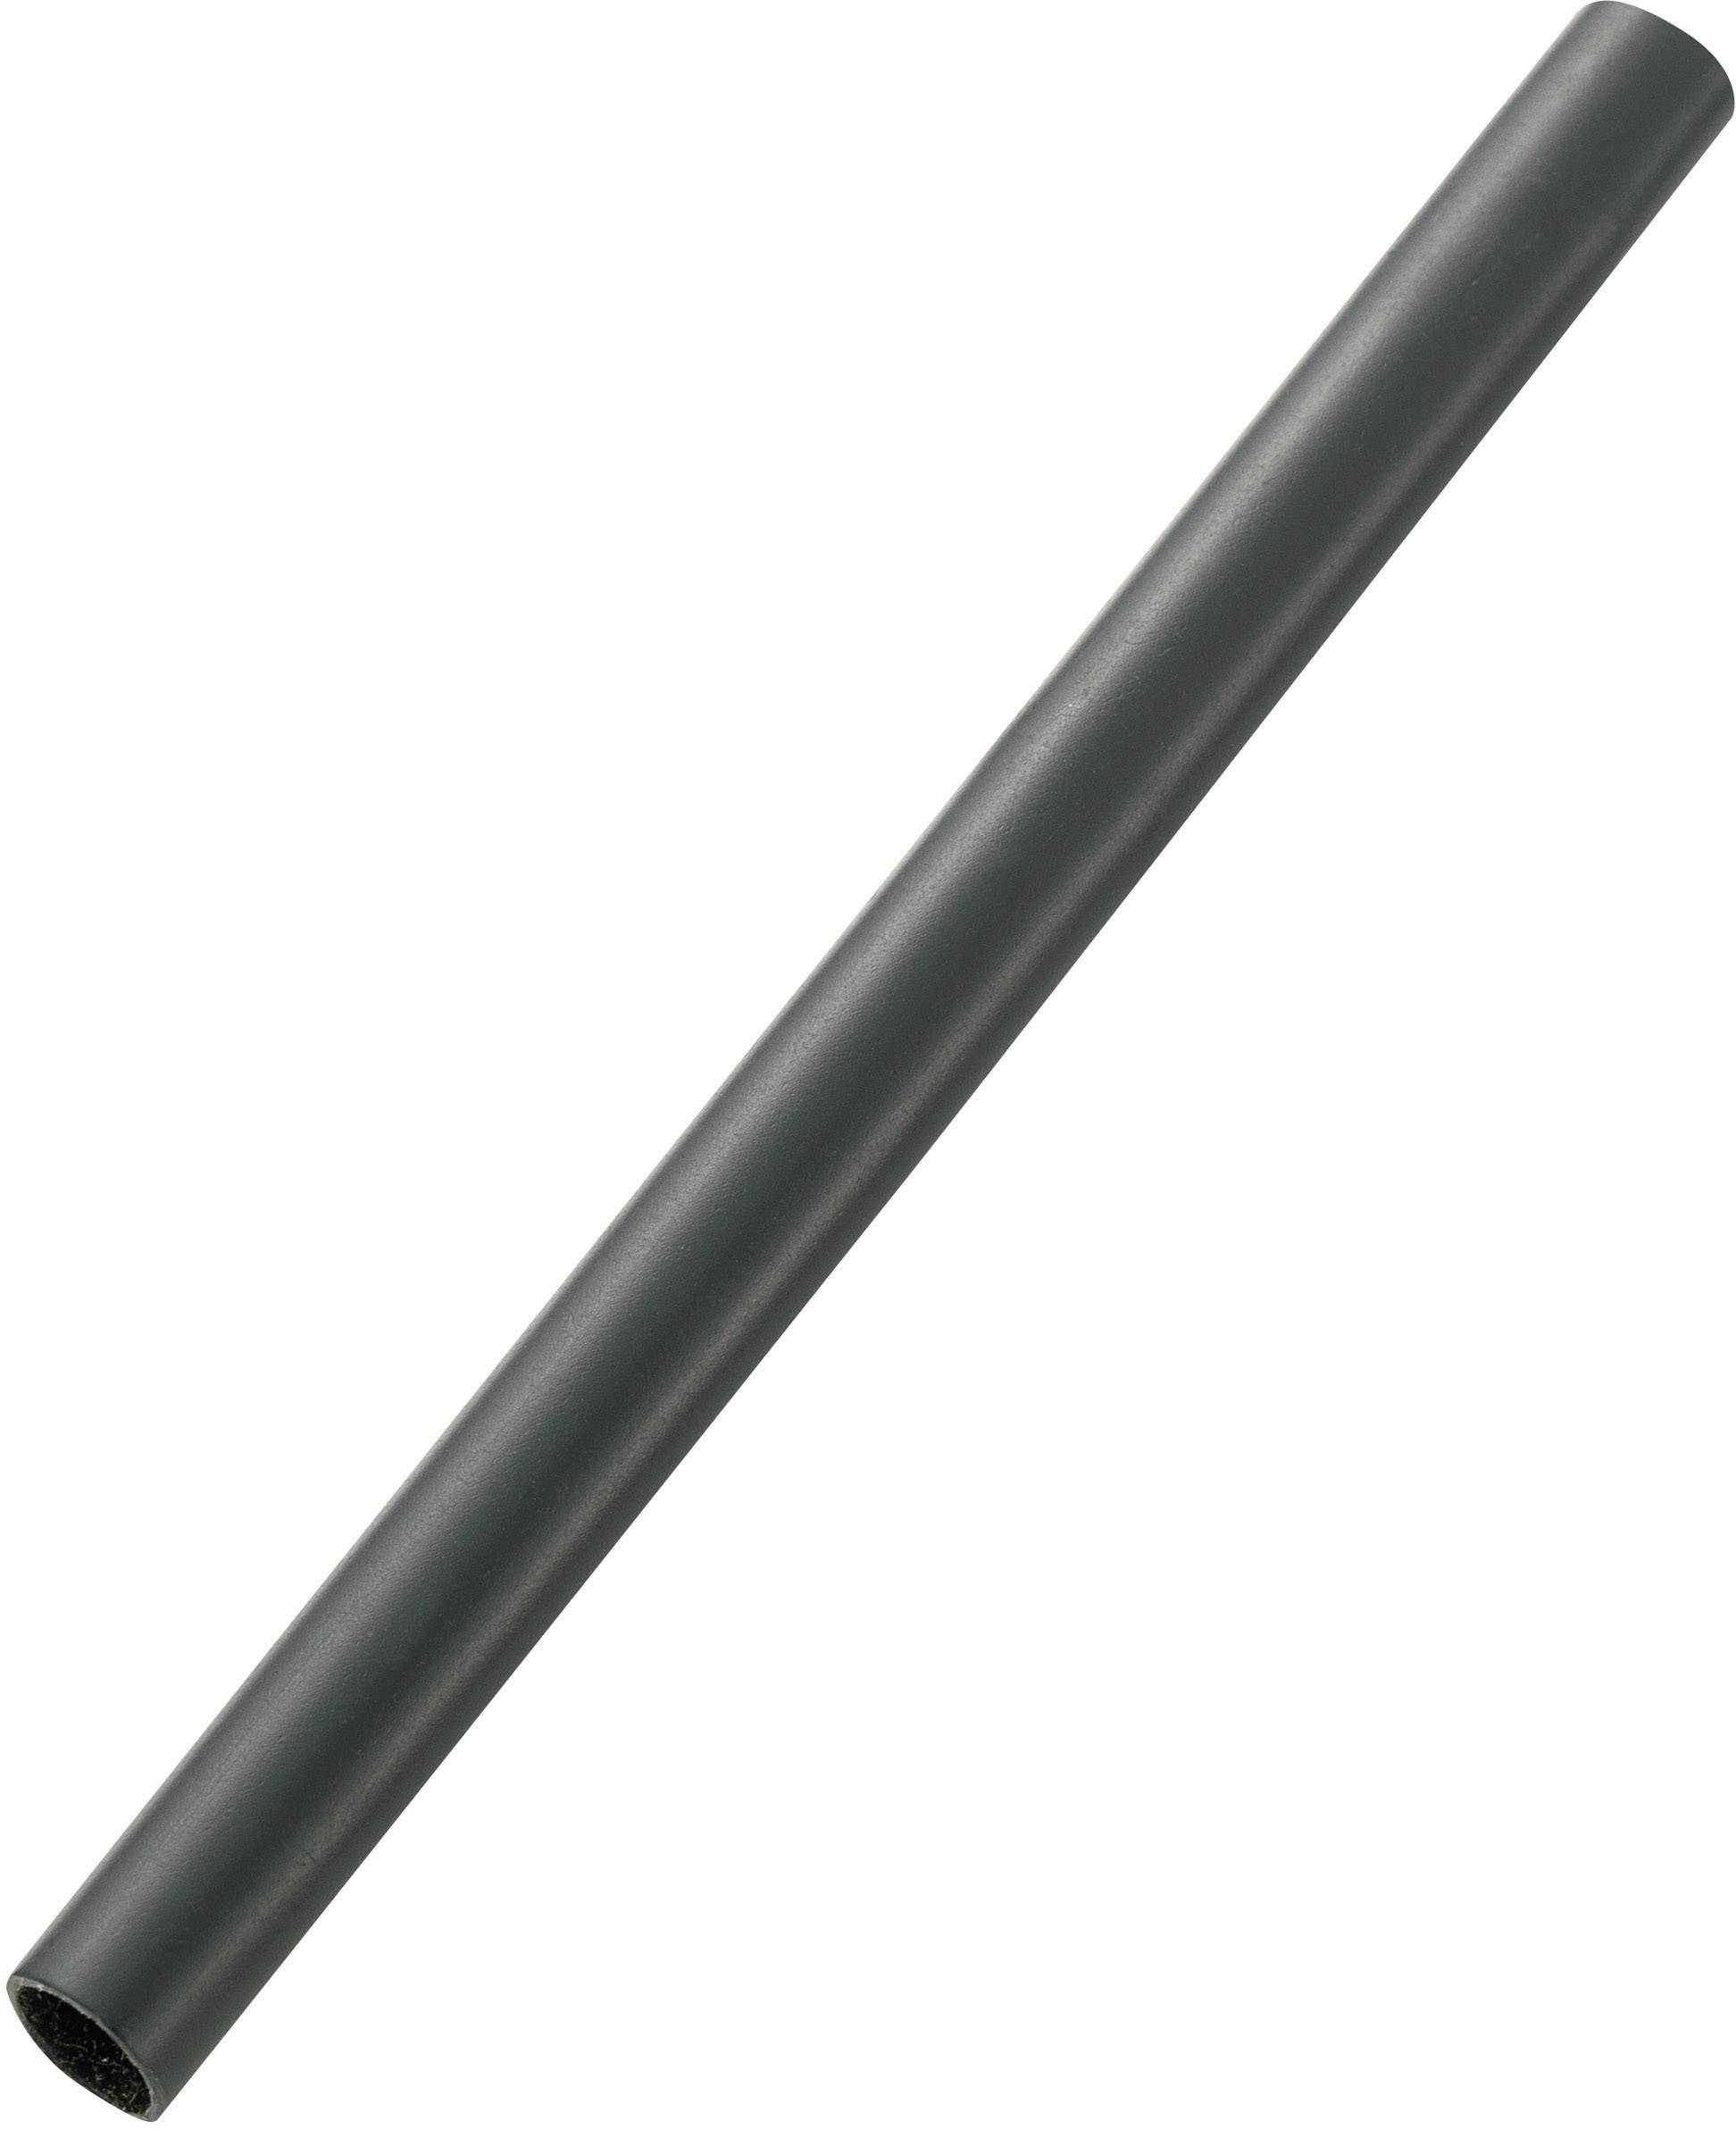 Schrumpfschlauch mit Kleber 1m ; 6:1 33,0-5,5mm ; Schwarz